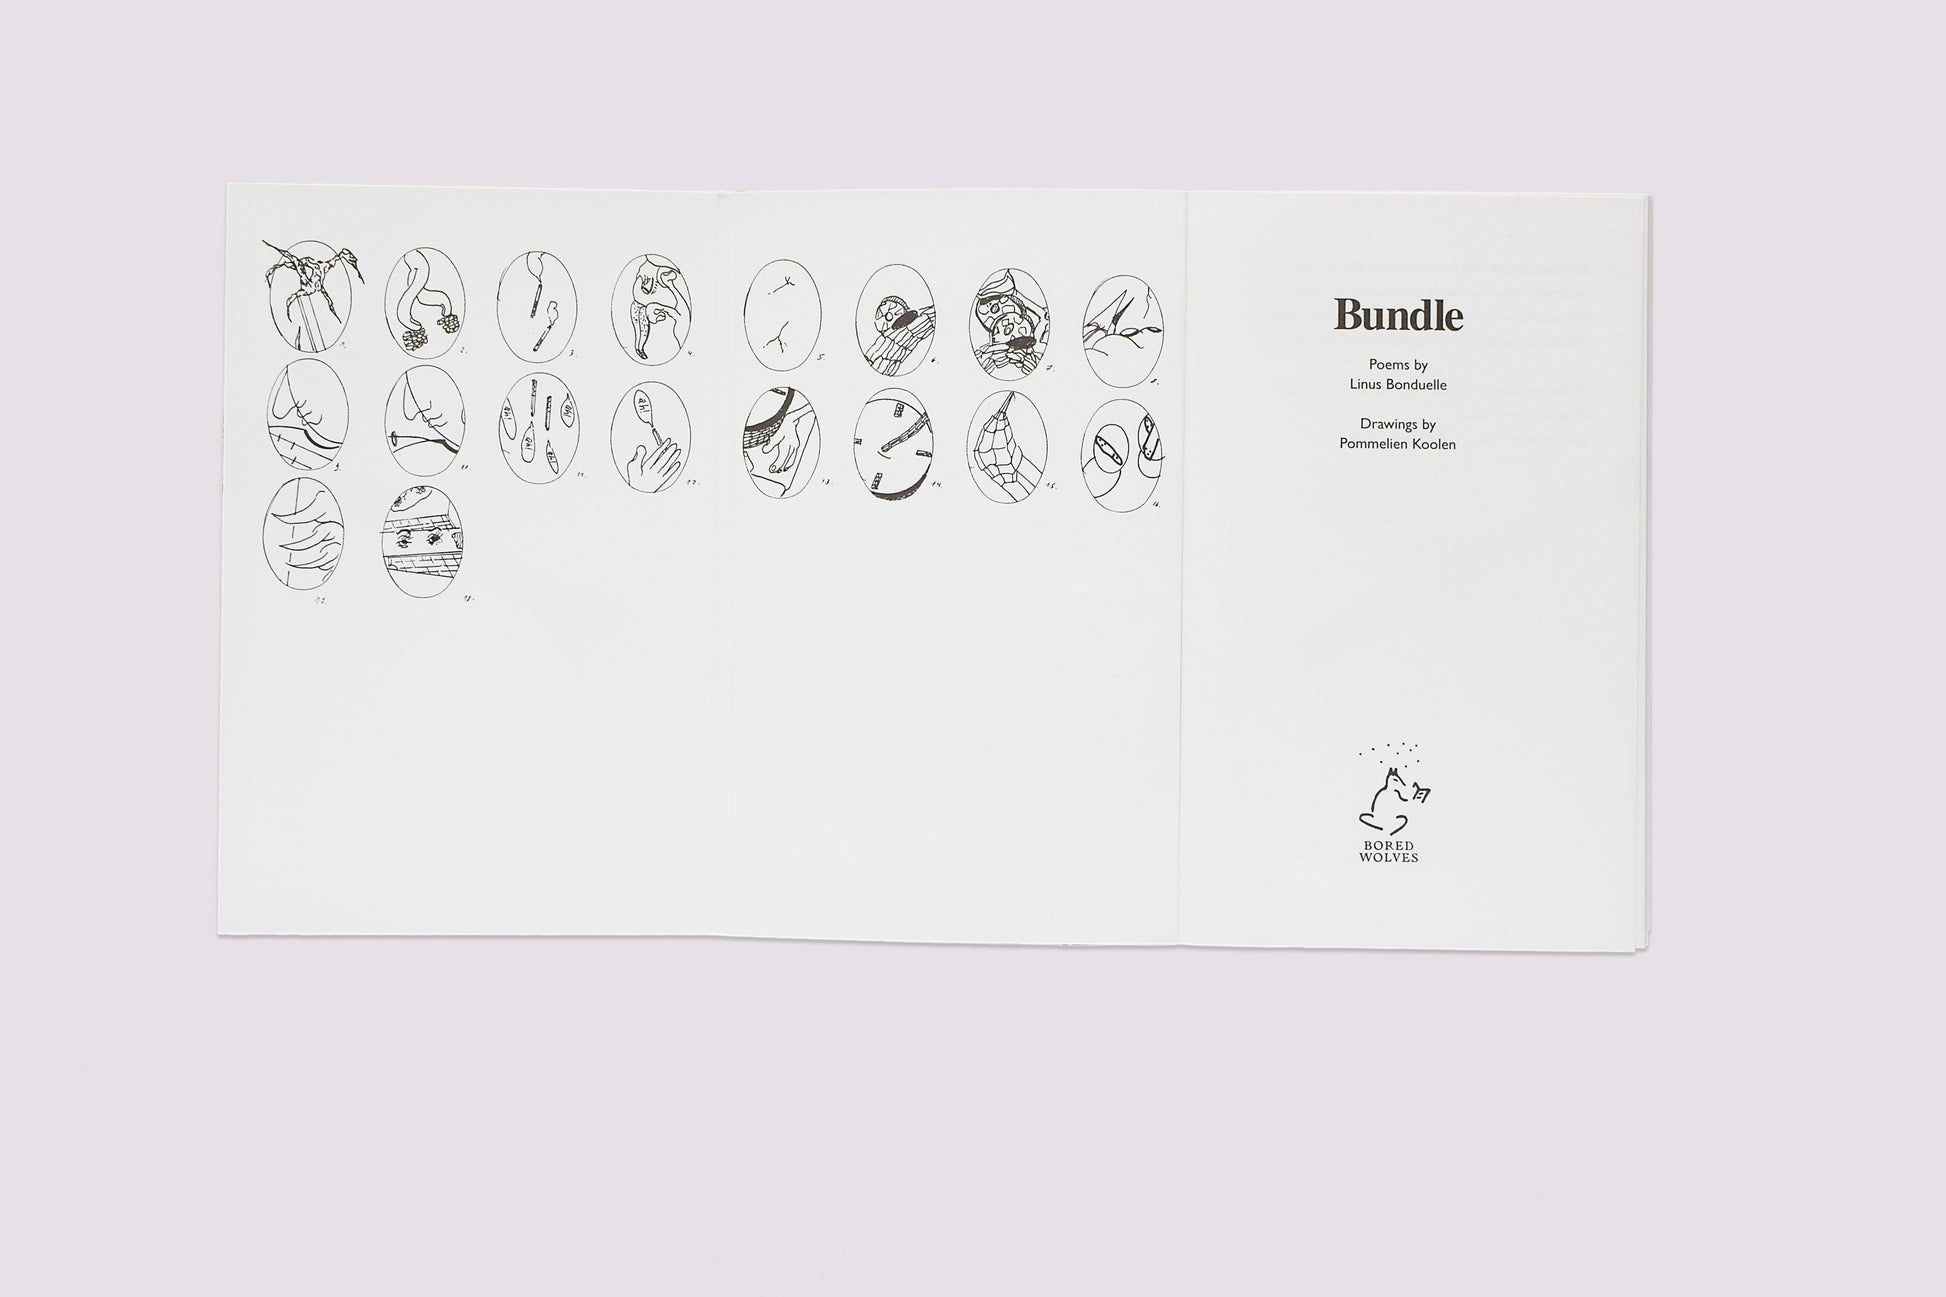 Bundle/Linus Bonduelle/Pommelien by Bored Wolves